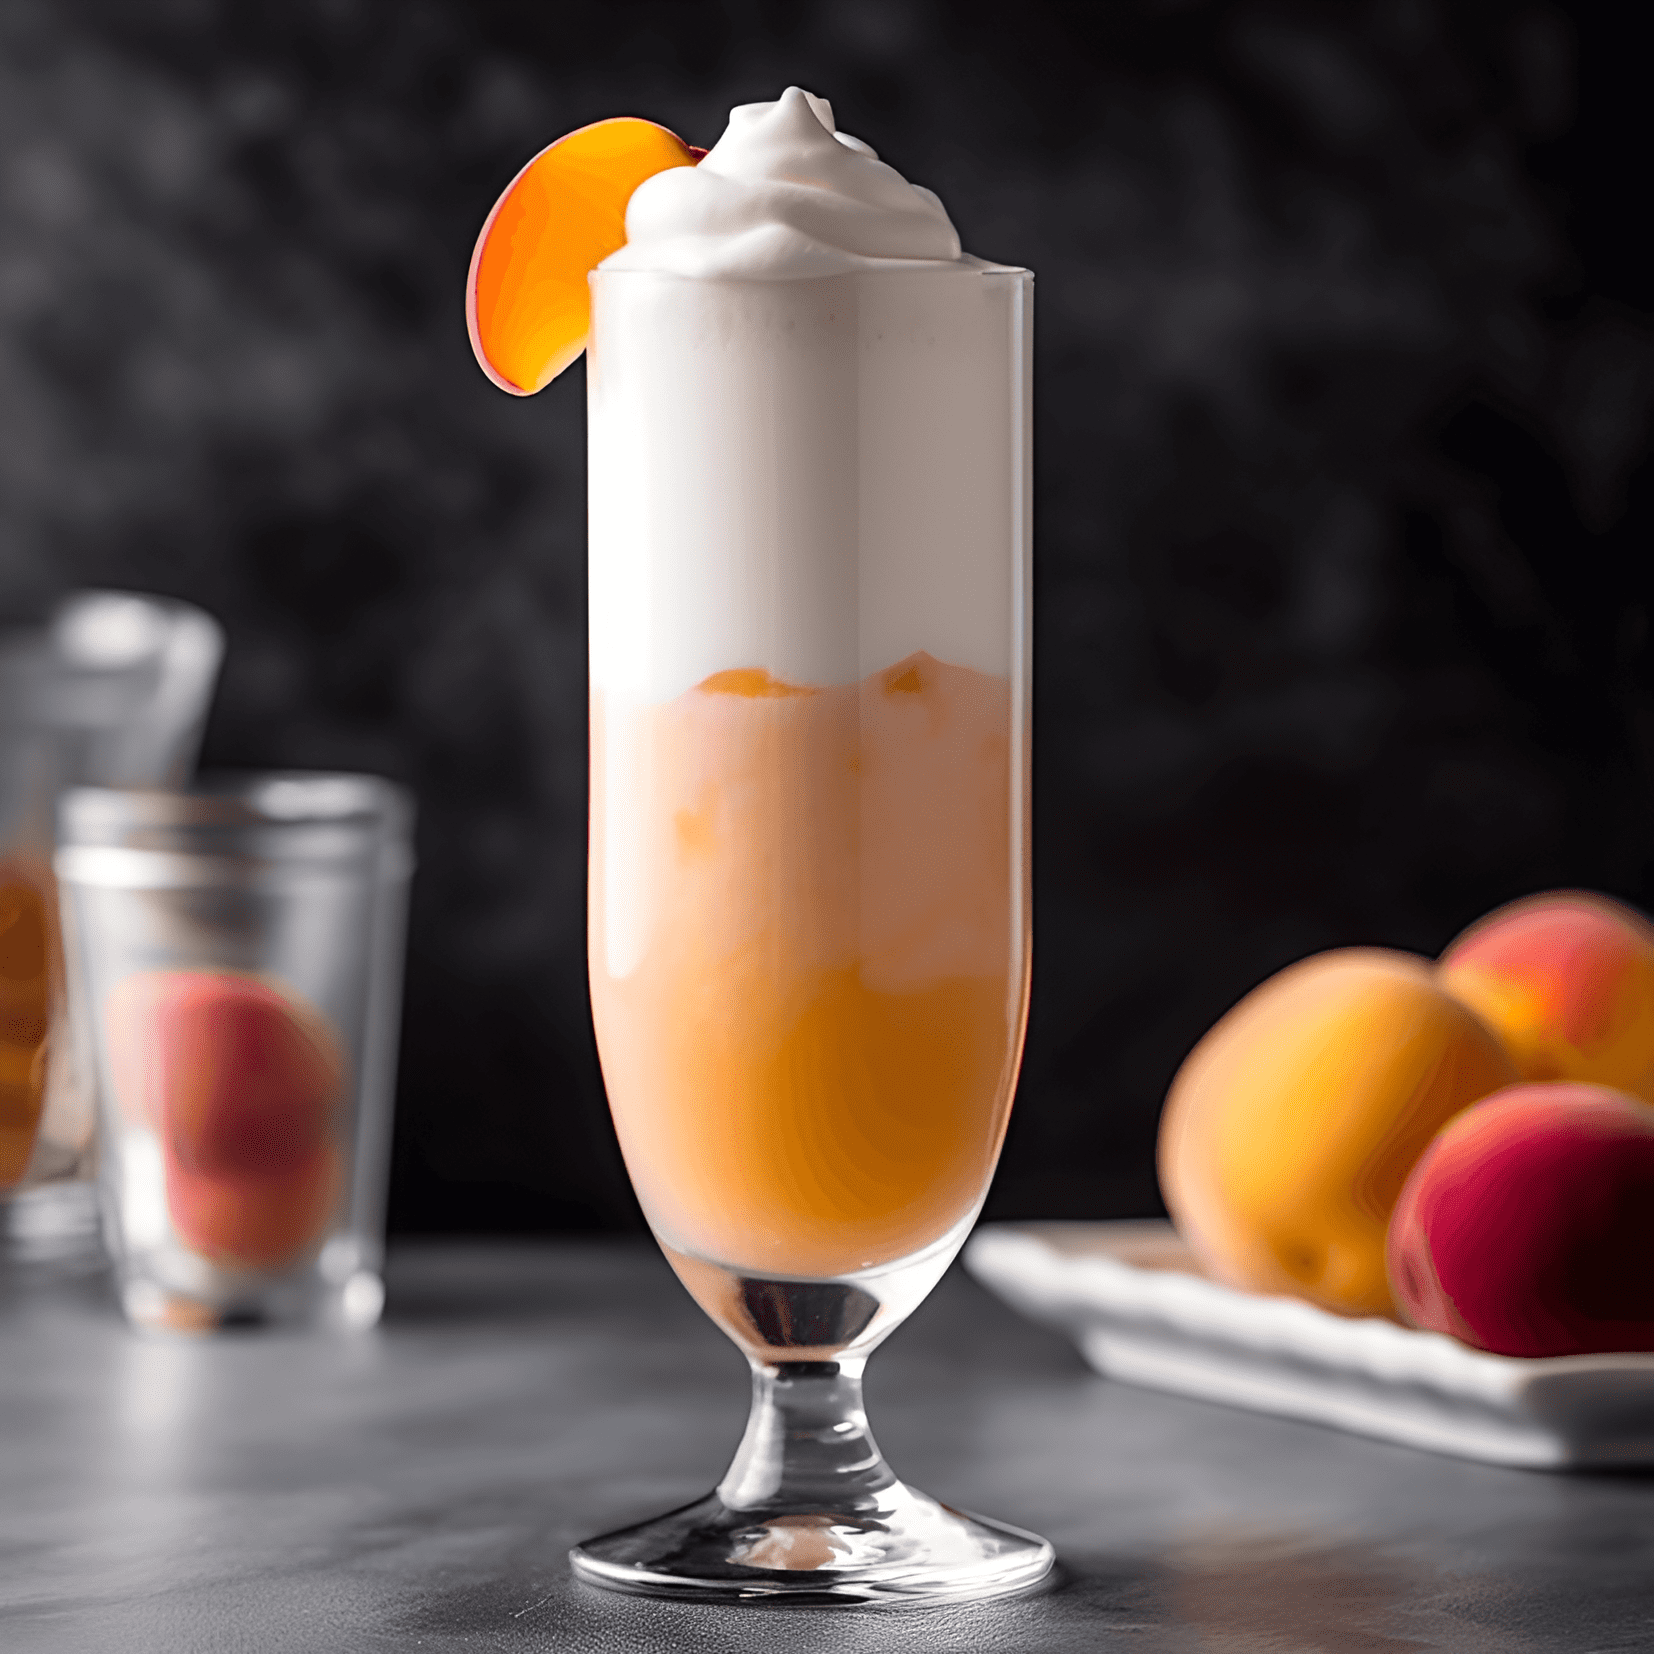 Duraznos y Crema Cóctel Receta - El cóctel Peaches and Cream es una bebida dulce, cremosa y afrutada con un toque de acidez de los duraznos. La combinación de durazno y crema crea una textura suave y aterciopelada que es refrescante e indulgente.